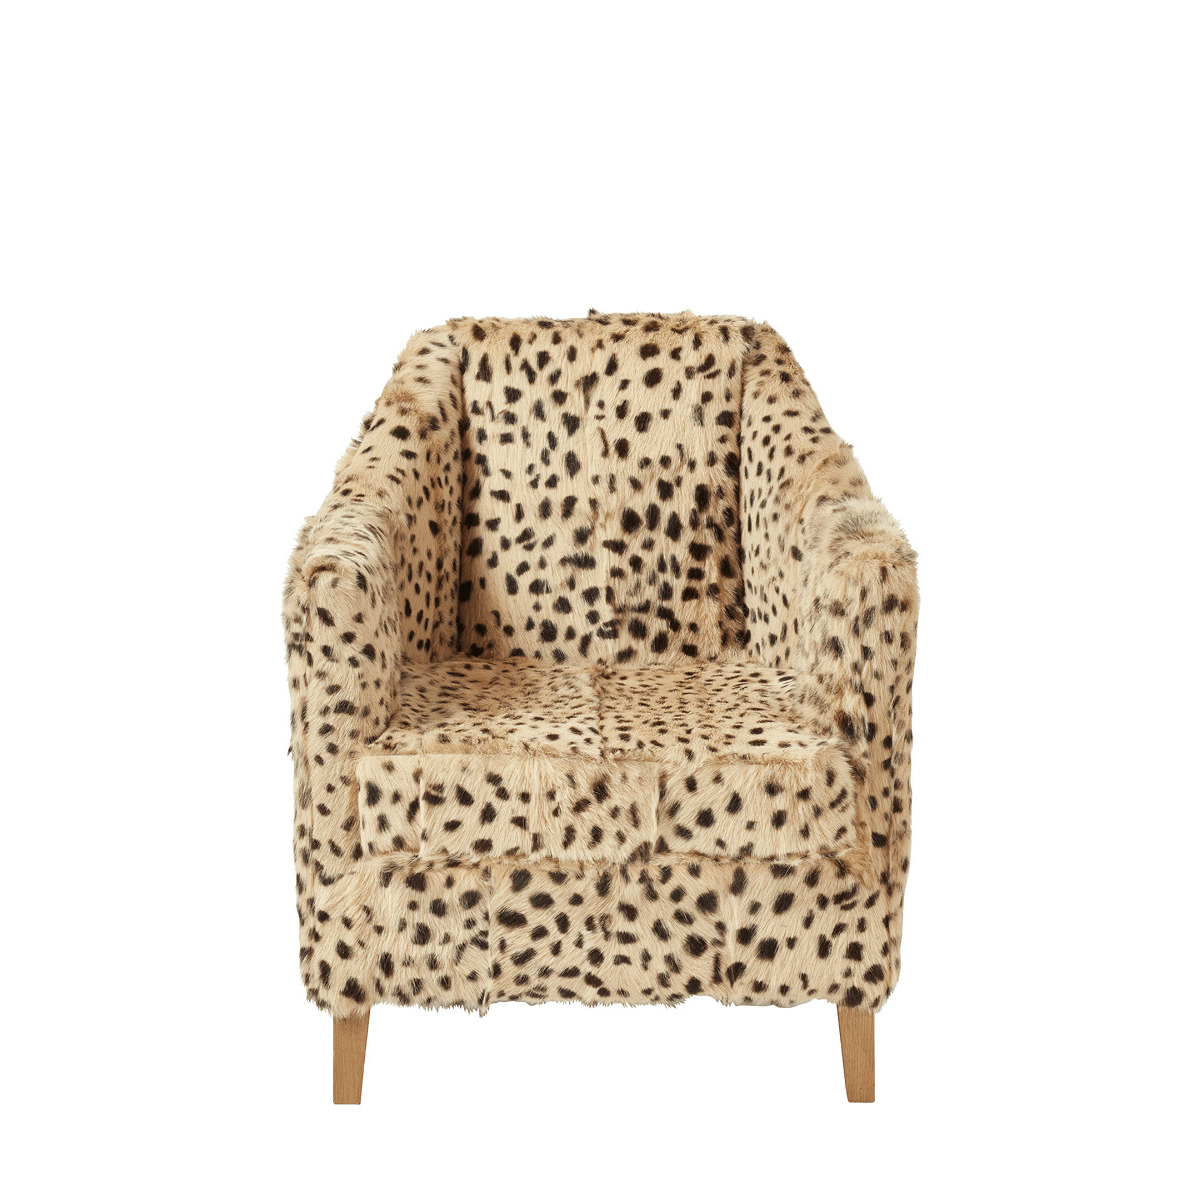 OKA, George Club Chair - Cheetah, Armchairs, Goat Hair, Cheetah Print